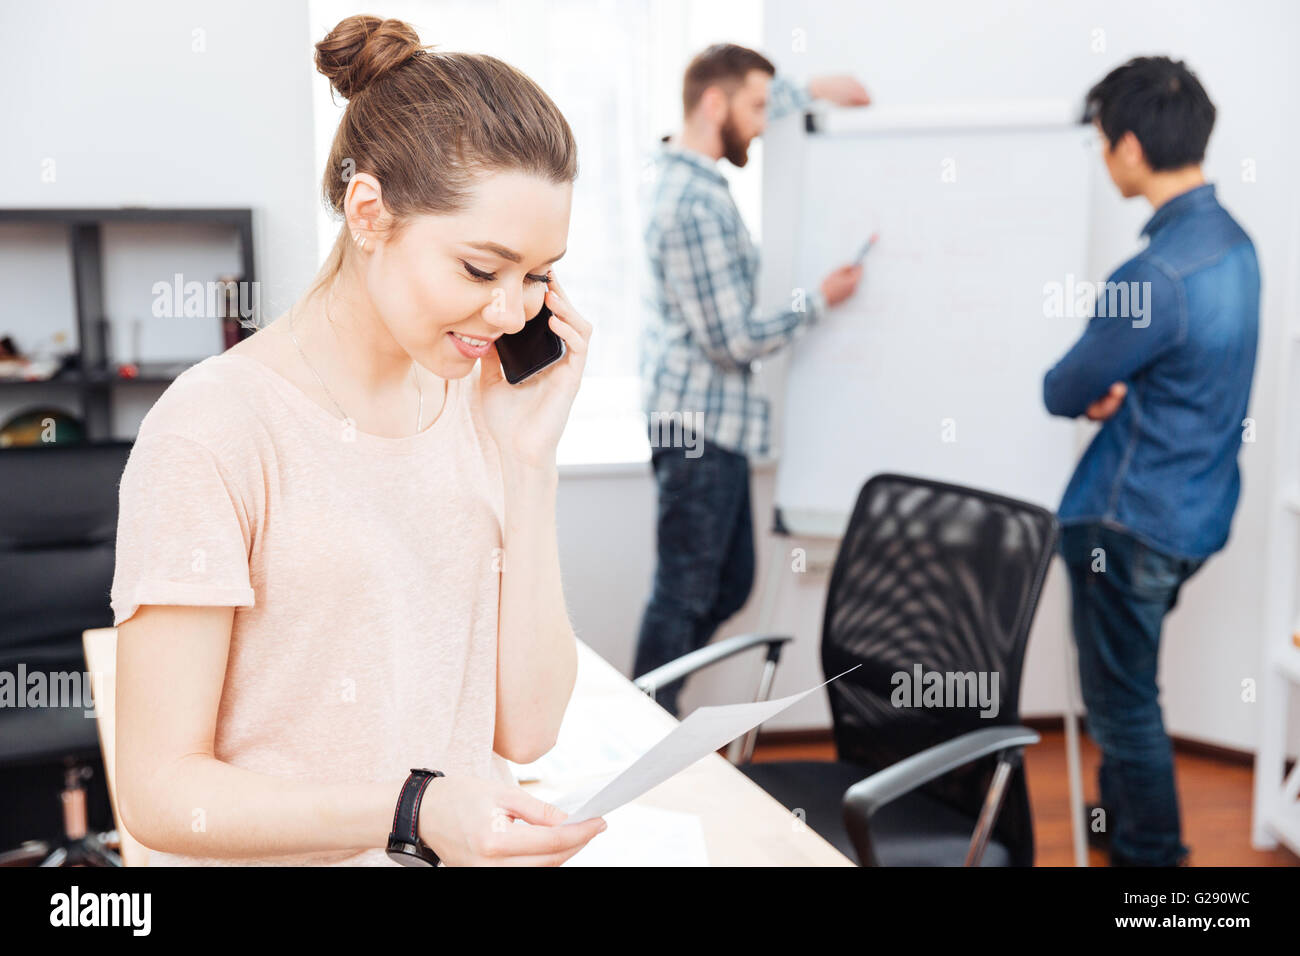 Fröhliche junge Geschäftsfrau telefonieren mit Handy während ihrer Kollegen arbeiten mit Flipchart in office Stockfoto